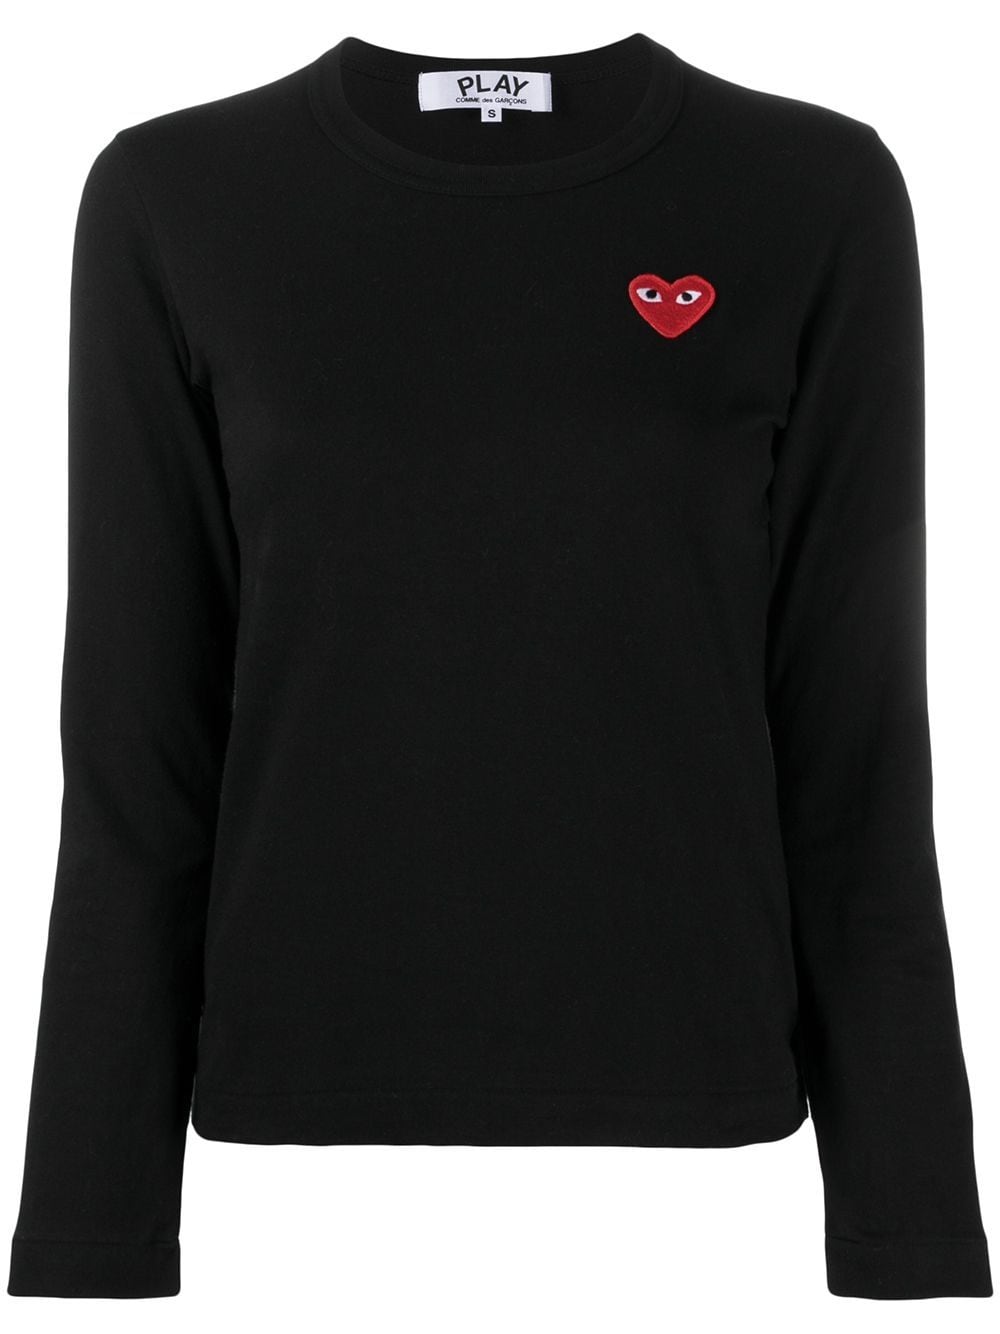 Simple black cotton appliquéd heart logo T-shirt